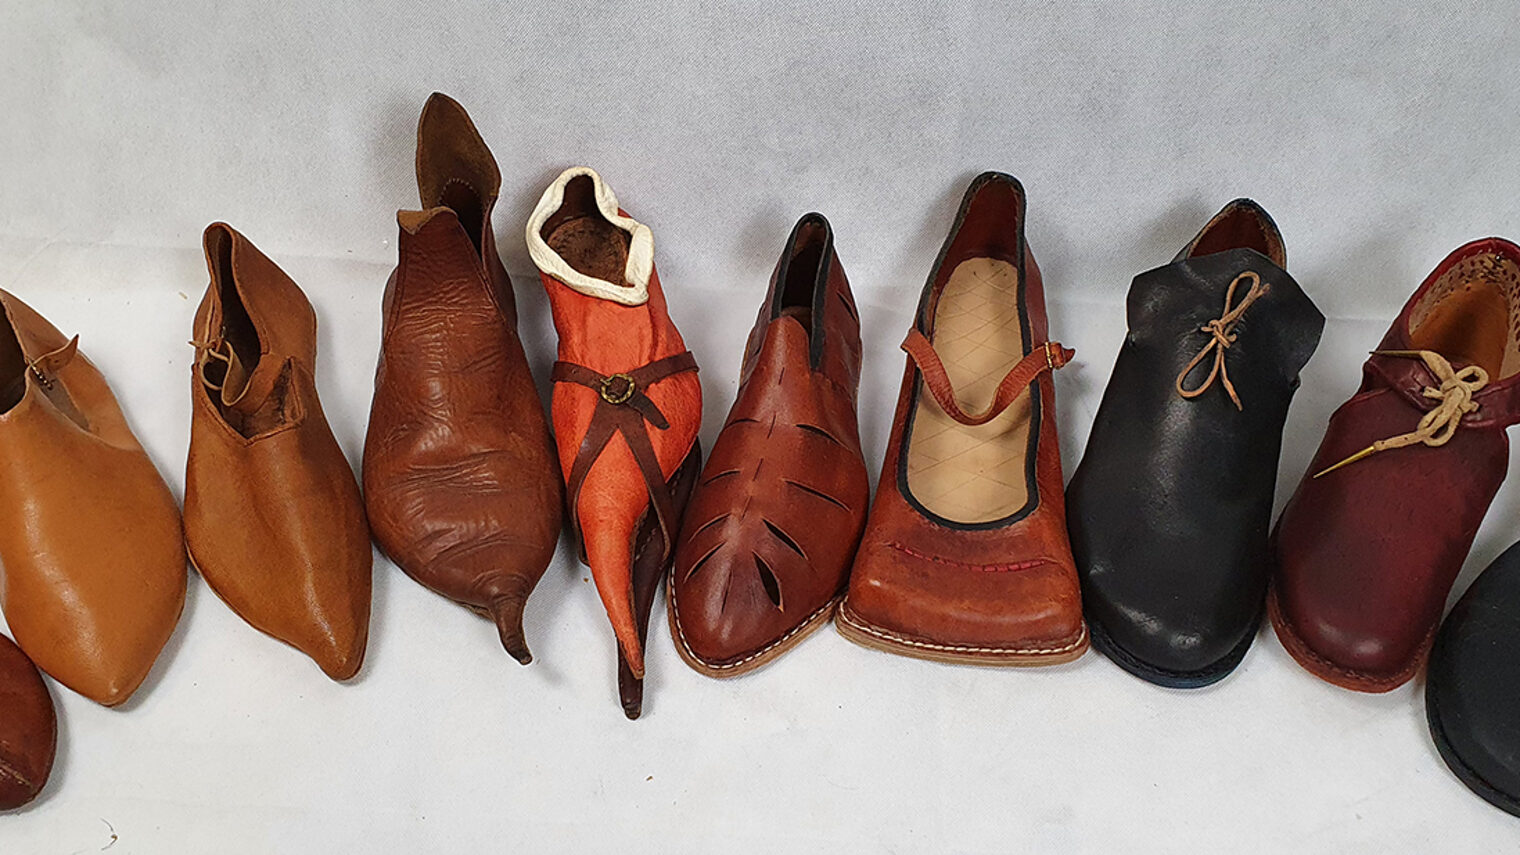 In seiner Werkstatt im oberpfälzischen Rettenbach fertigt der 28-Jährige Schuhwerk von der Antike bis zum Barock und legt dabei großen Wert auf historisch korrekte Verarbeitung. 